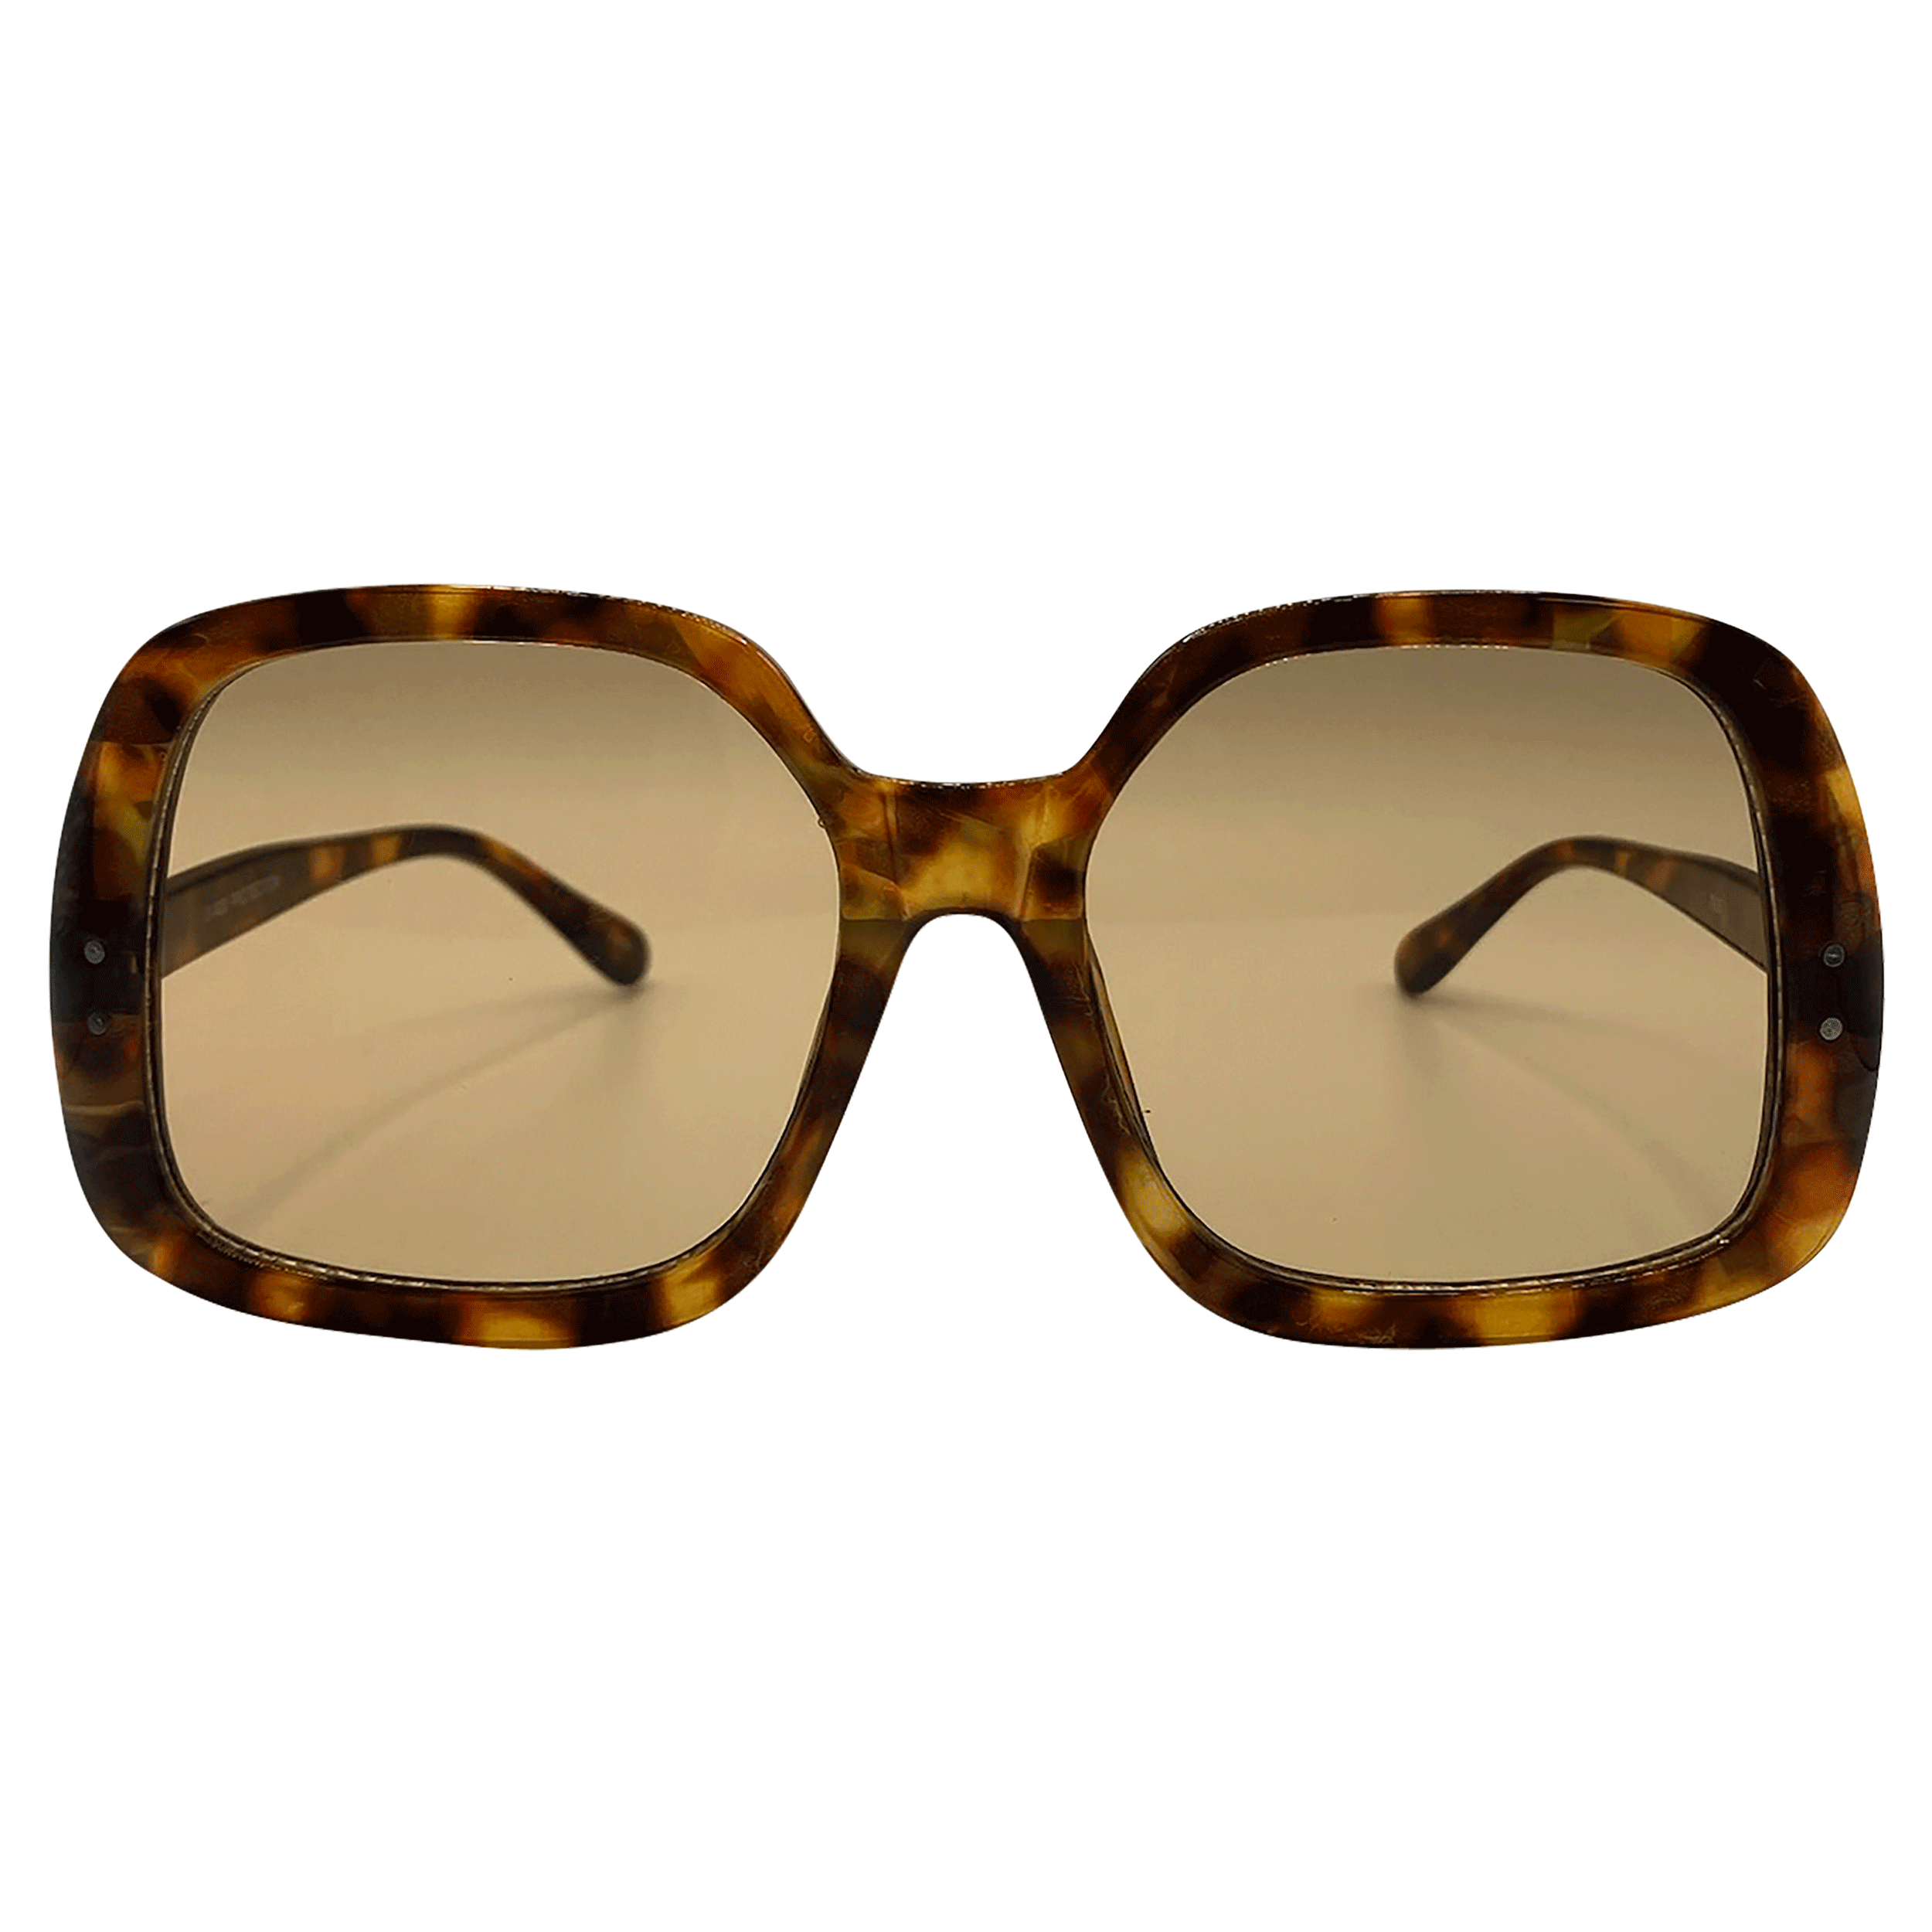 KAI 70s-Inspired Sunglasses